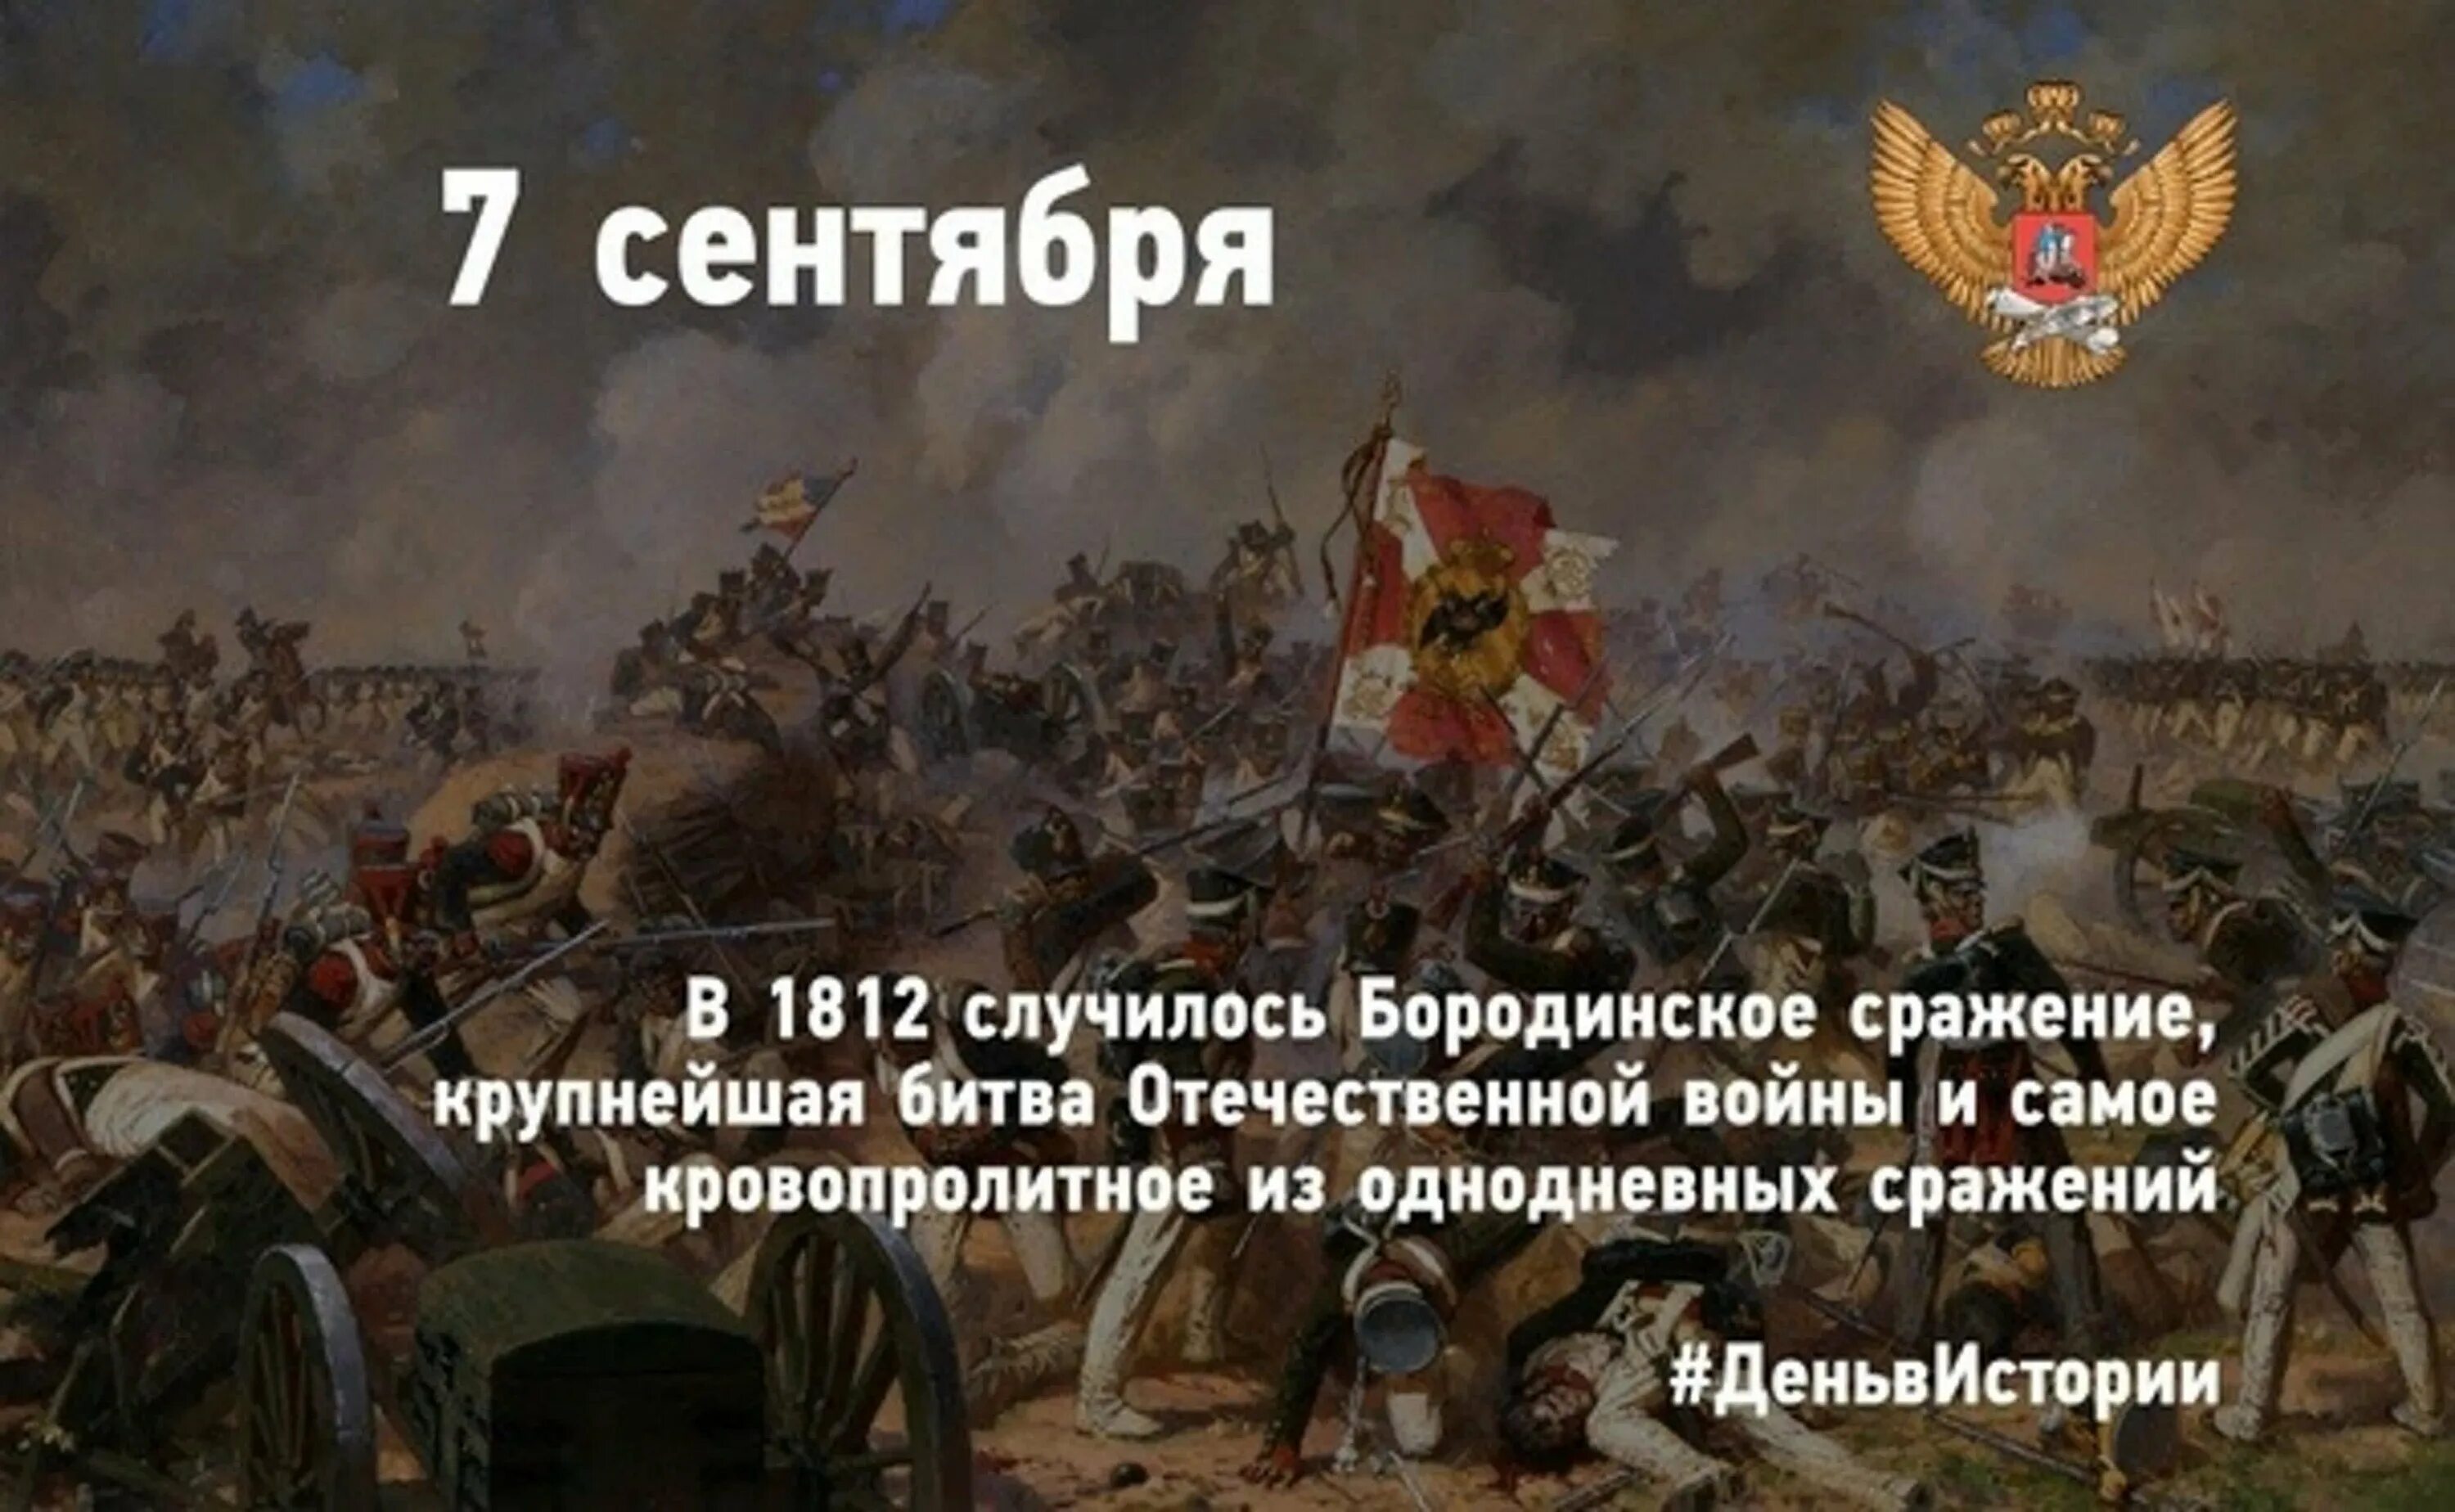 8 сентября 1812 событие. Бородинская битва 1812 день воинской славы России. Бородинское сражение 1812 Кутузов.